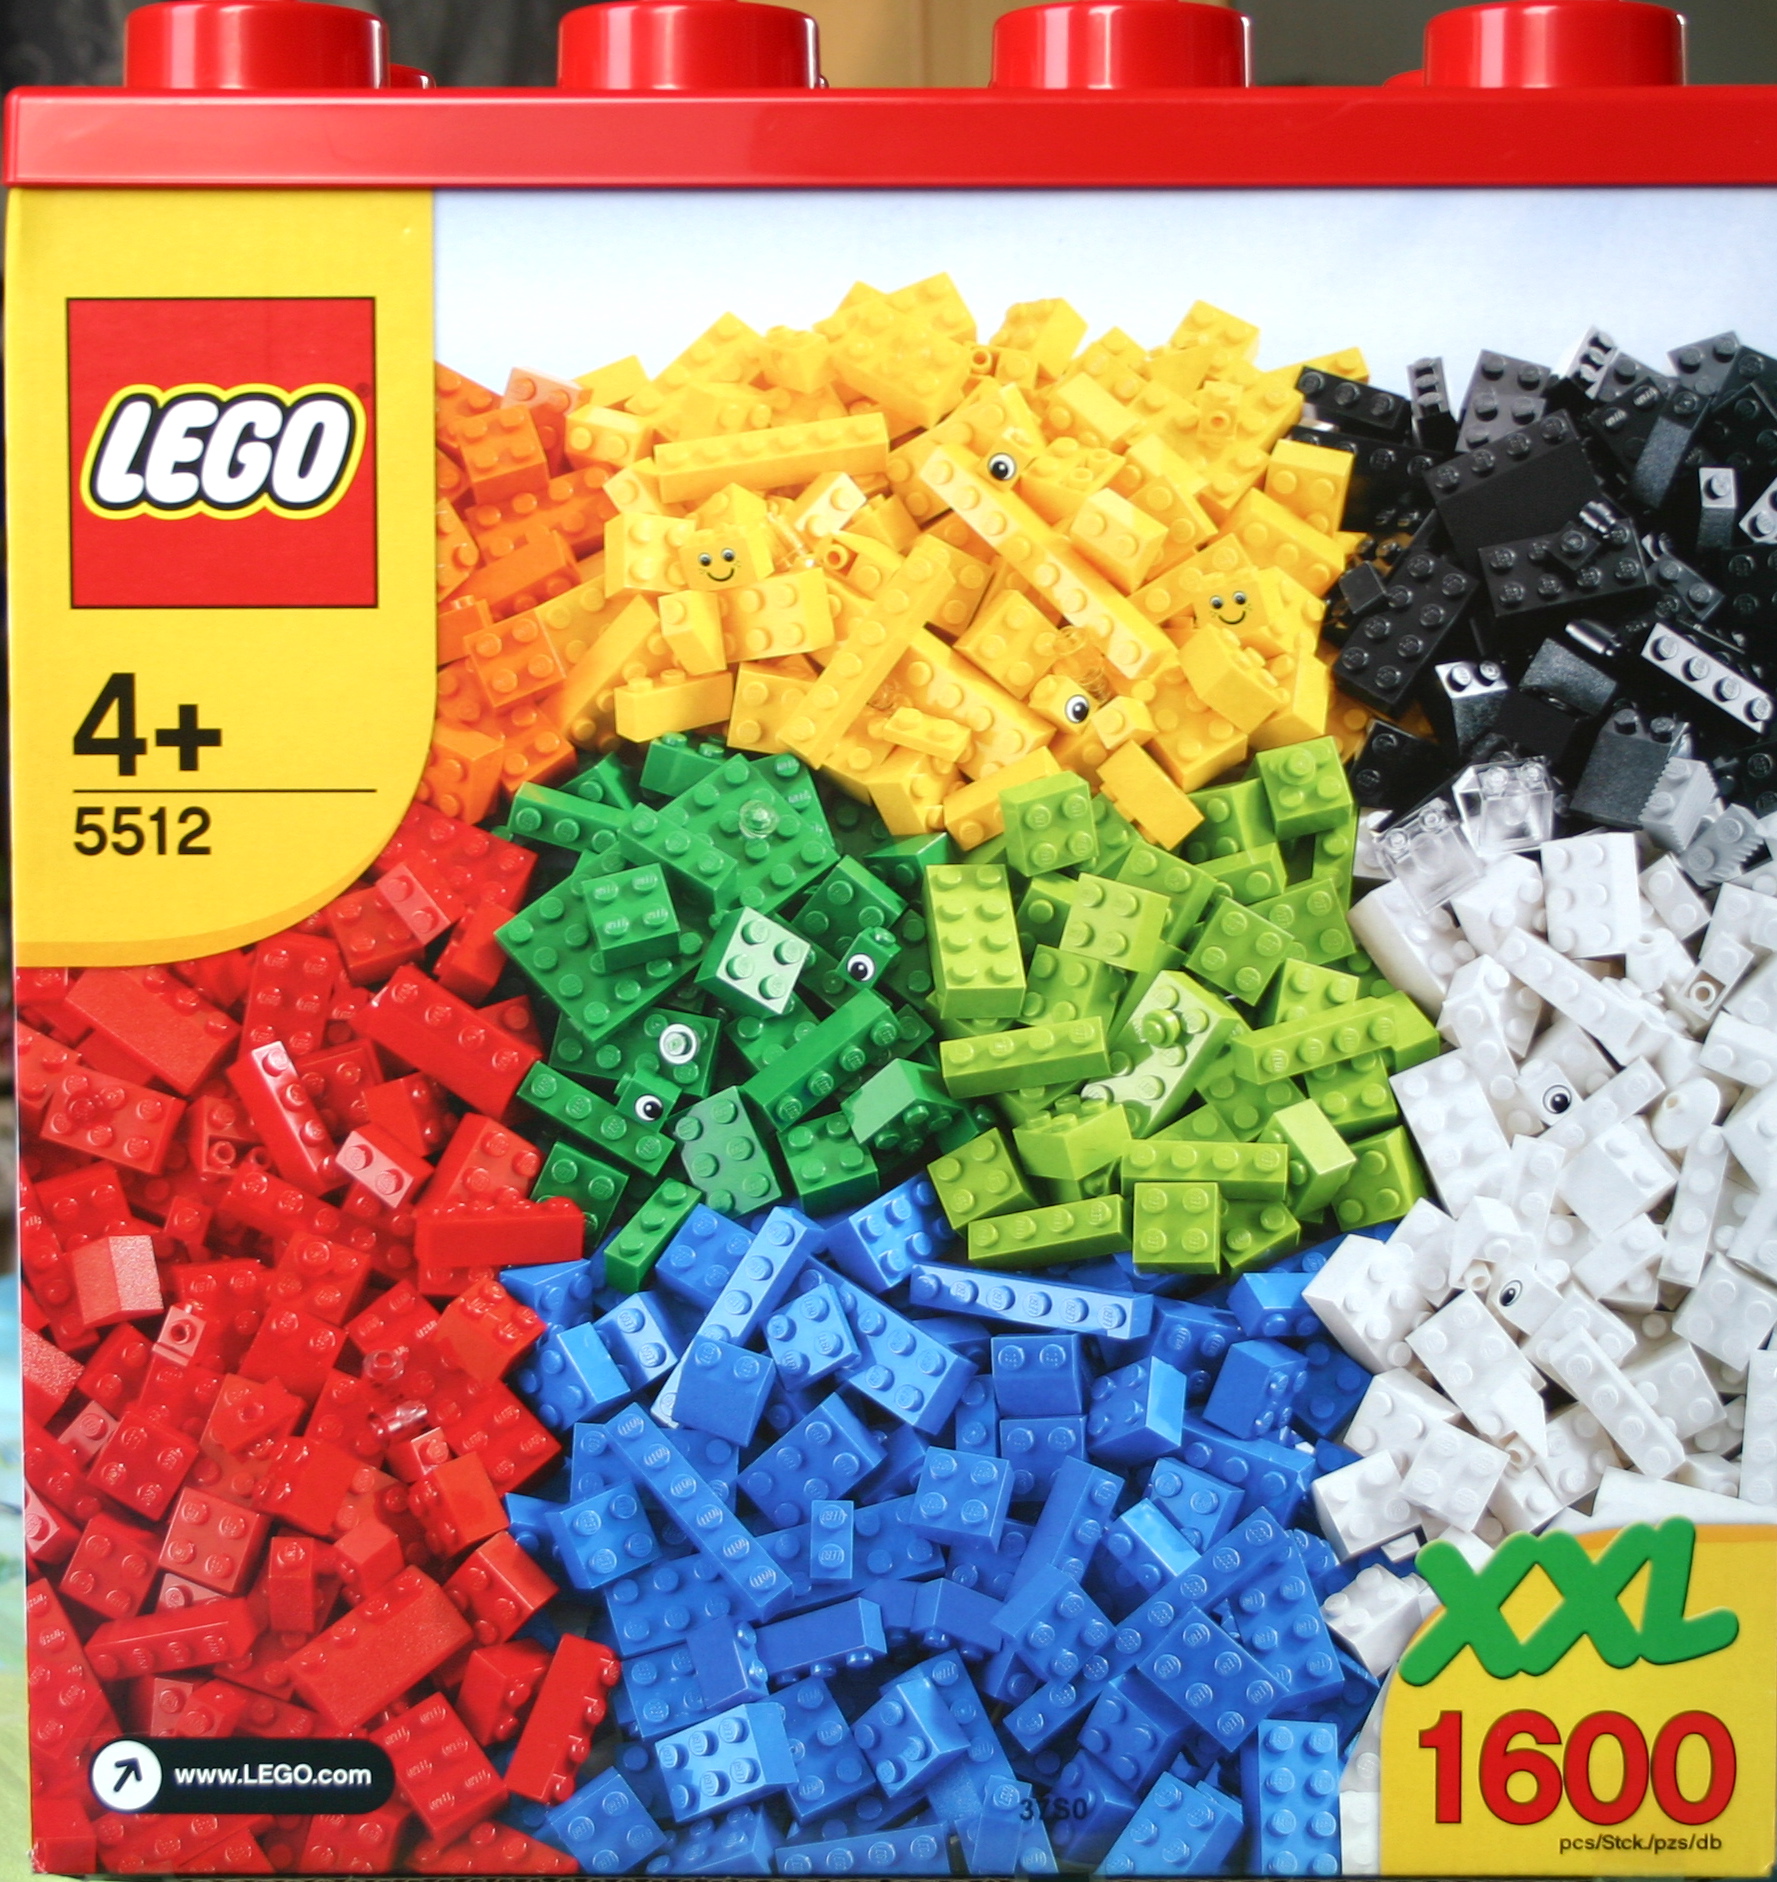 XXL Box 5512 | Lego Wiki |